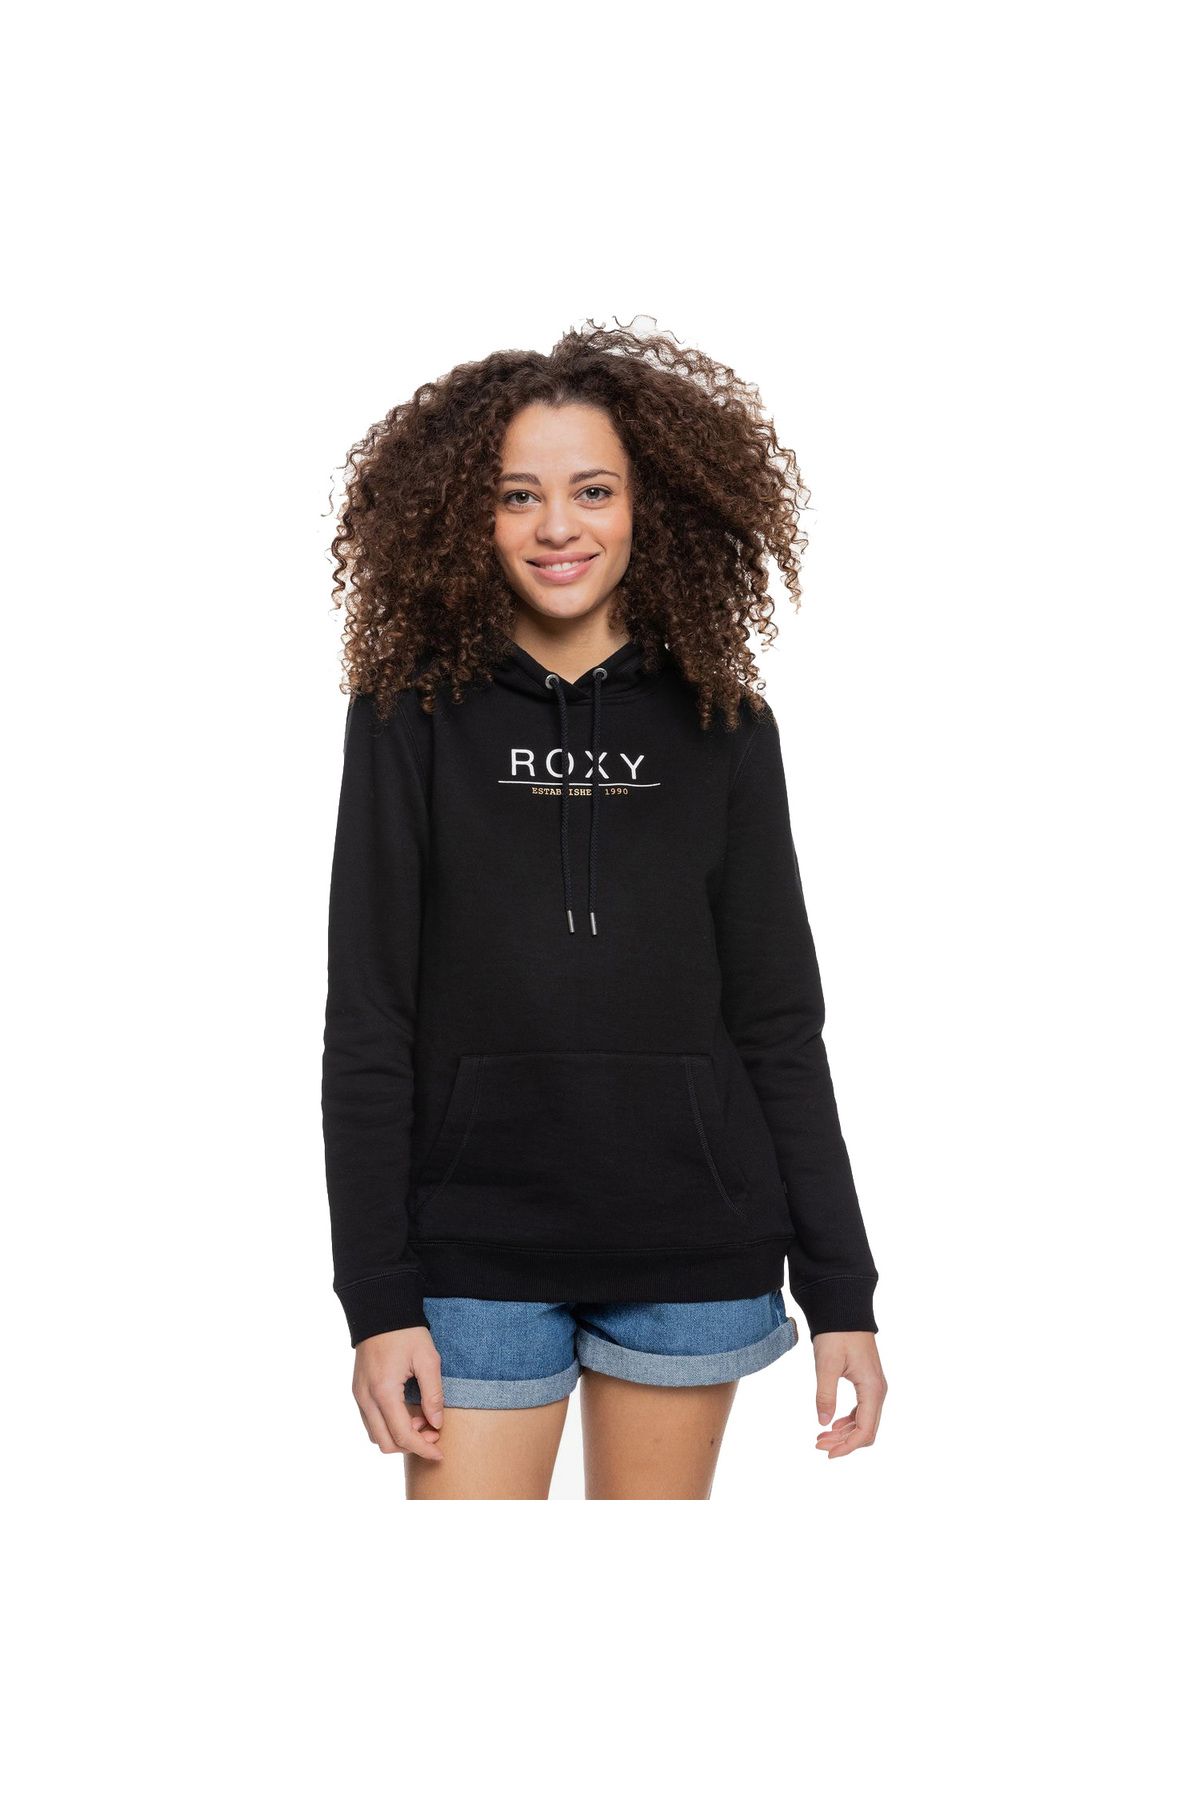 Roxy Day Breaks Kadın Sweatshirt